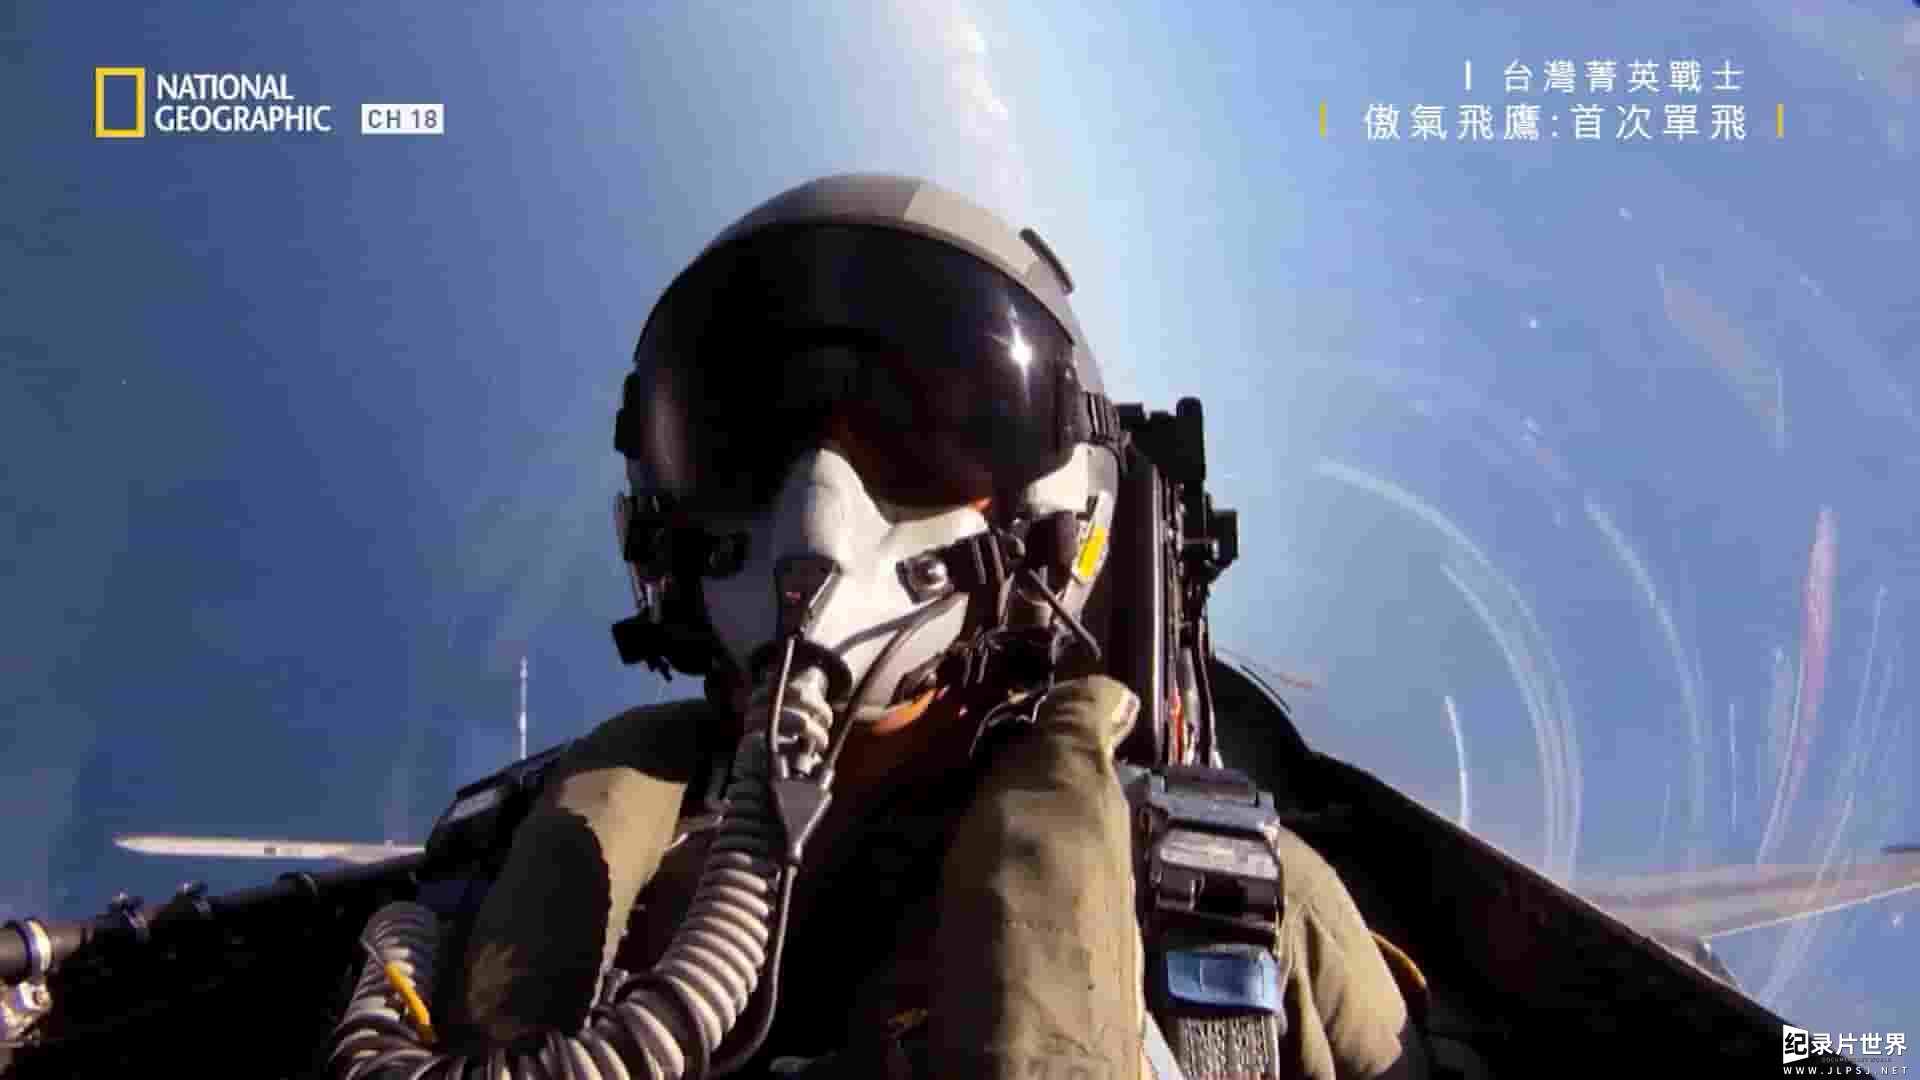 台湾纪录片《台湾菁英战士:傲气飞鹰 Taiwan's Elite Warriors:Fighter Pilot》全7集